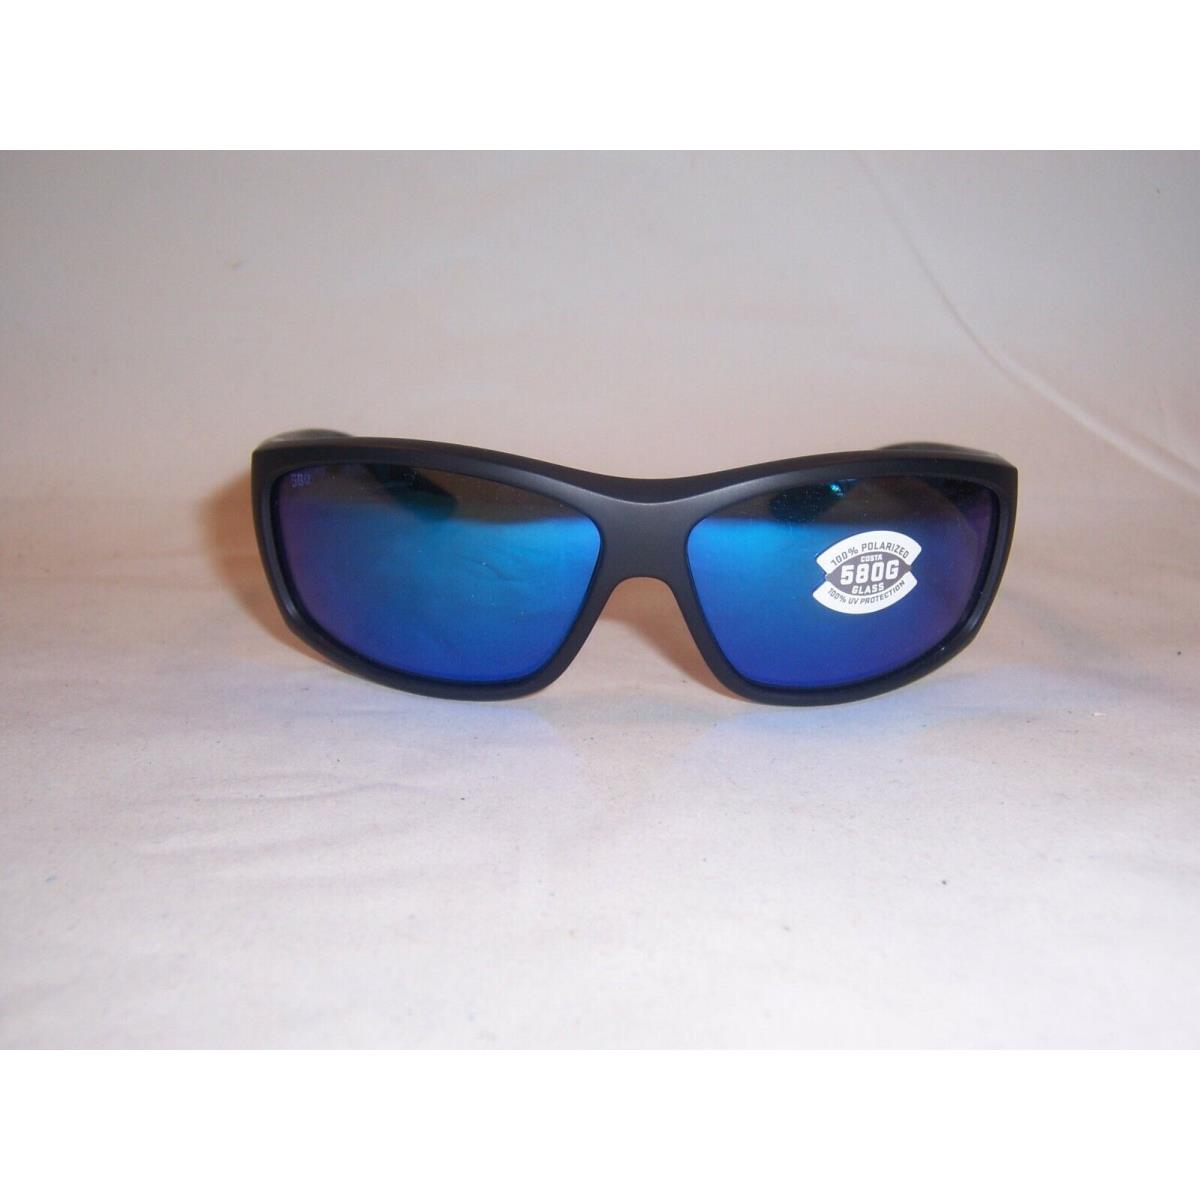 Costa Del Mar sunglasses Saltbreak - Black Frame, Blue Lens 2